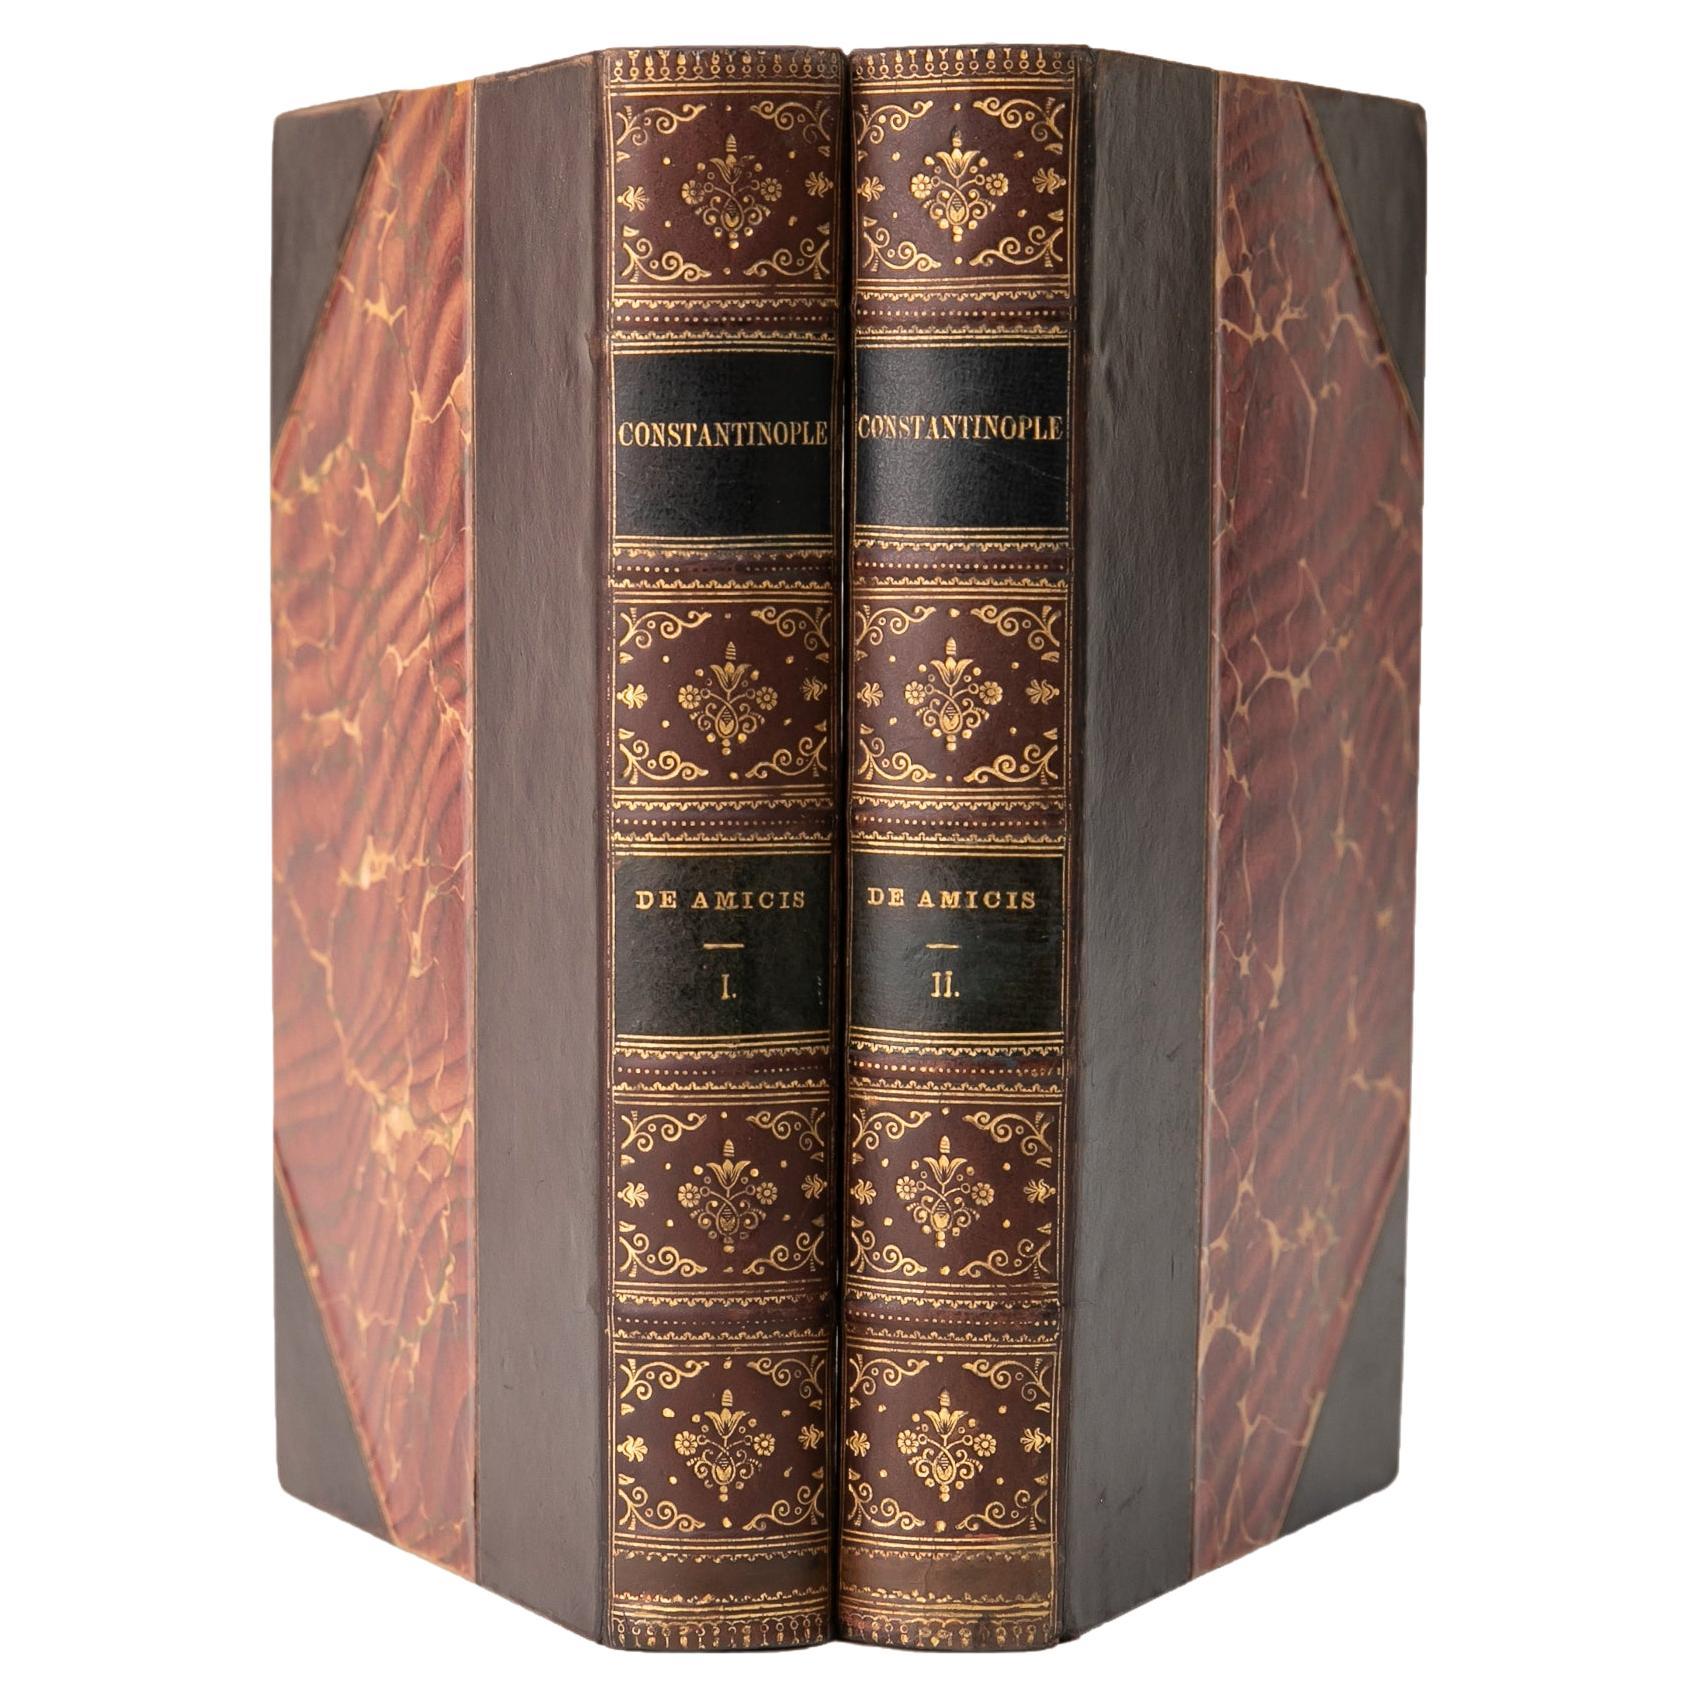 2 Volumes. Edmondo de Amicis, Constantinople. For Sale